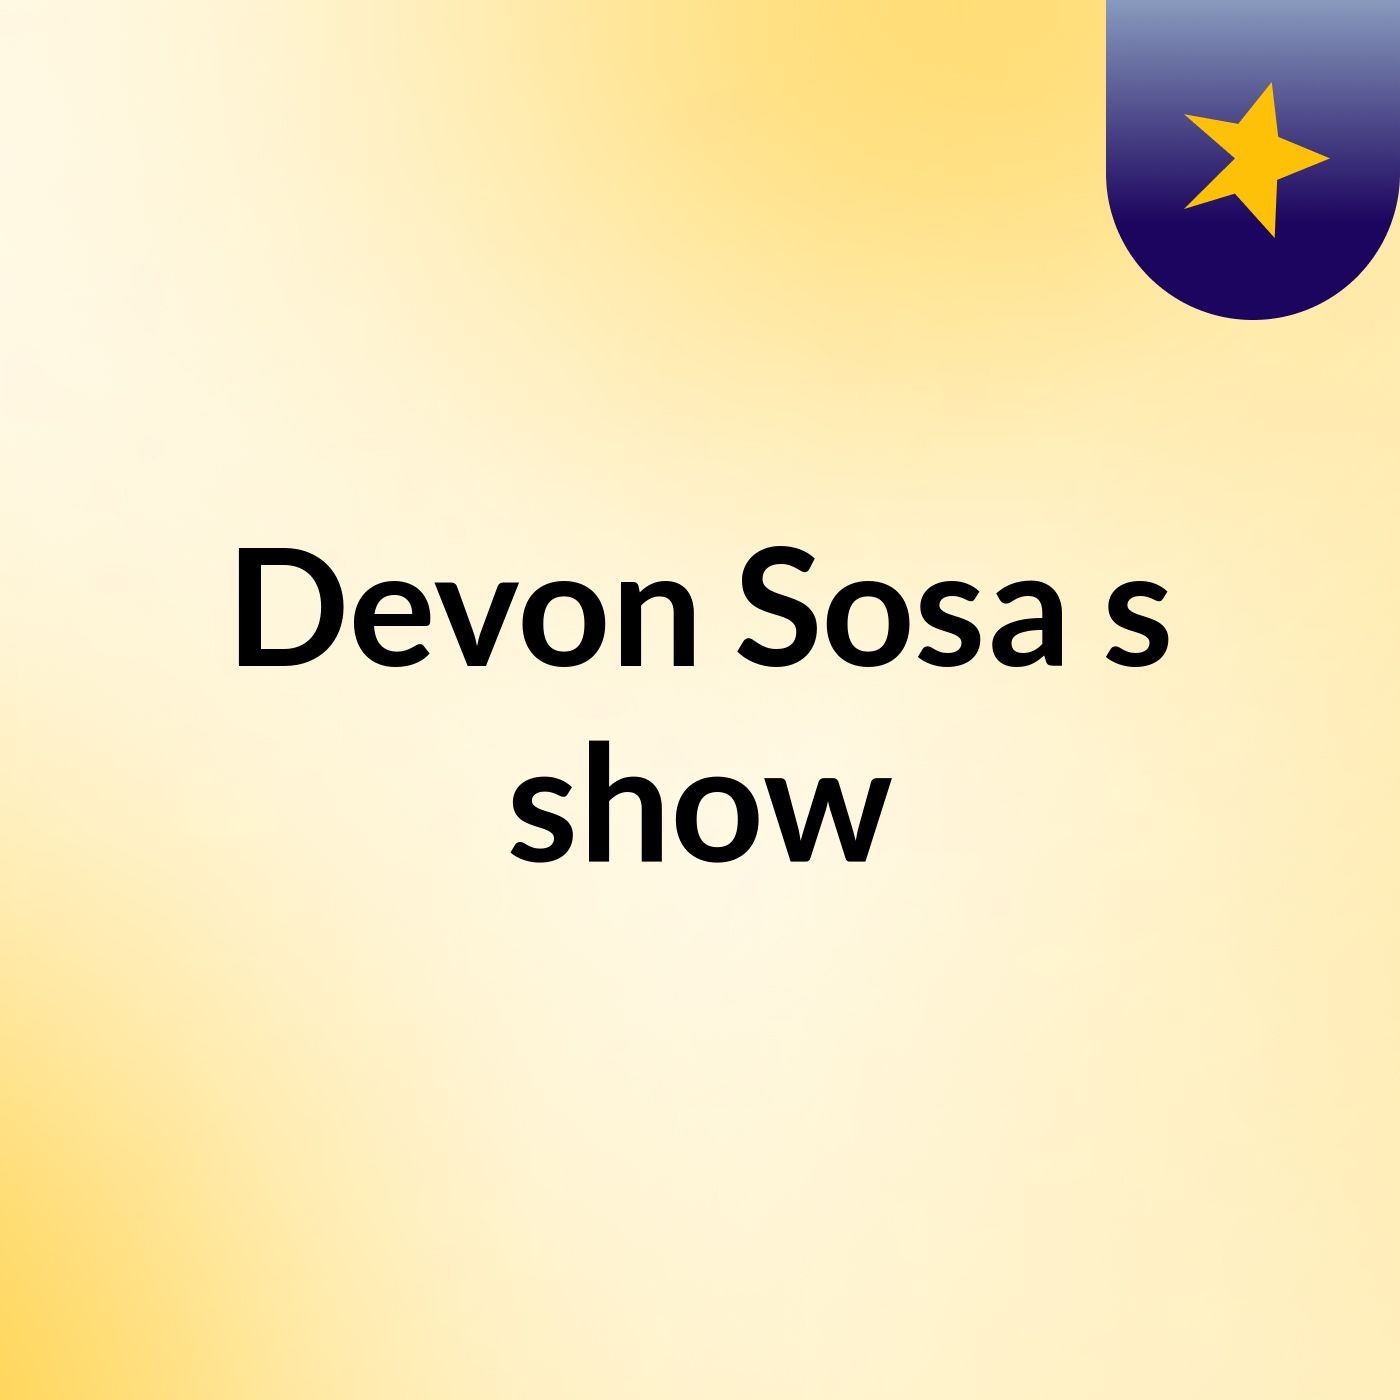 Devon Sosa's show